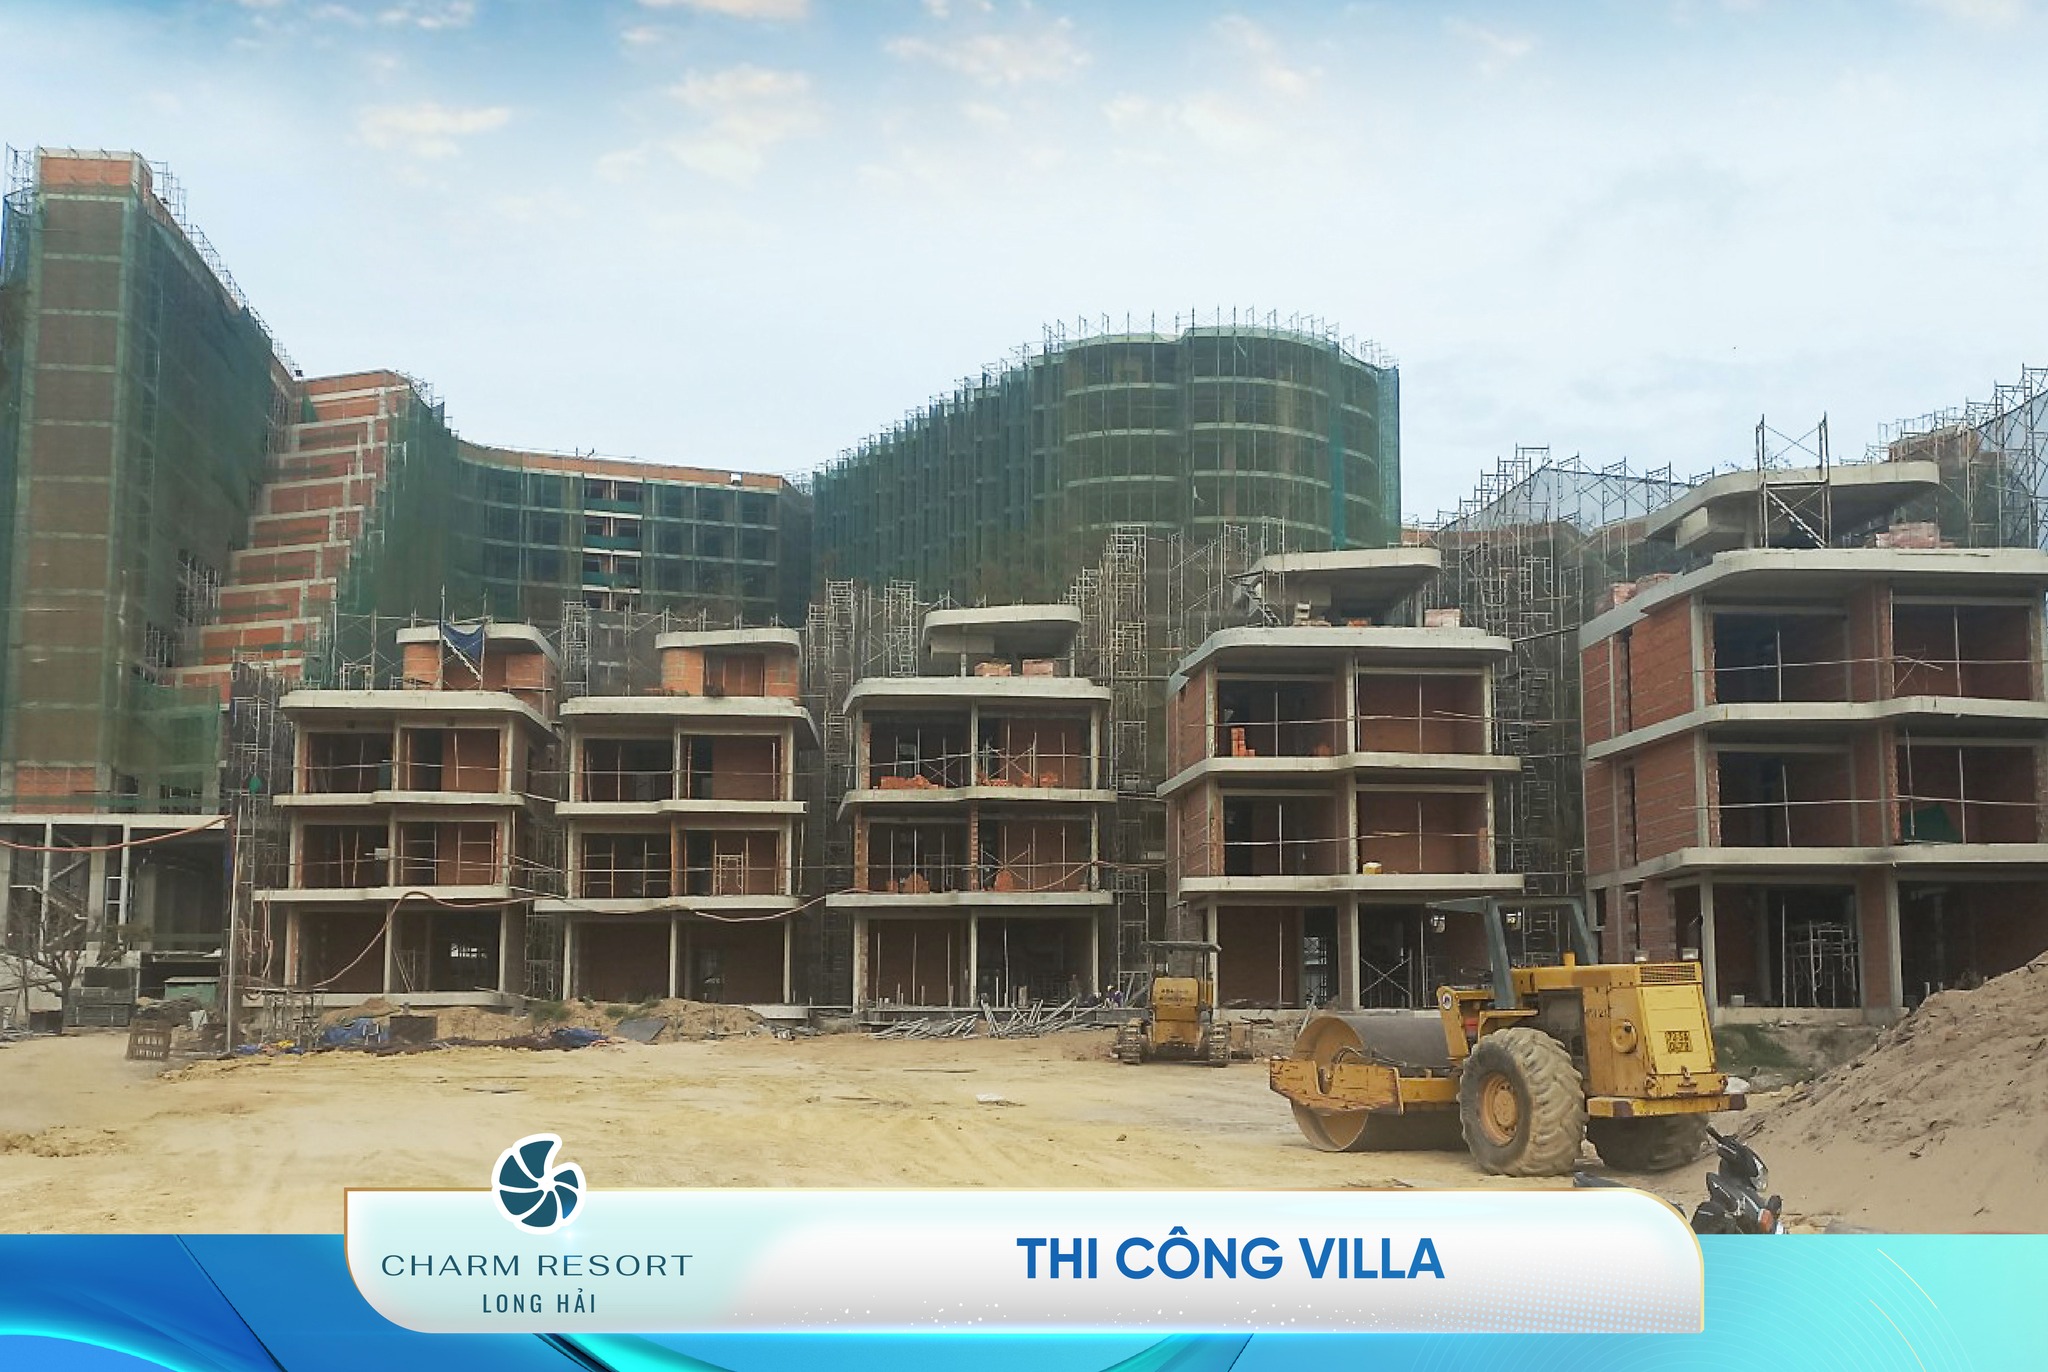 Với tiến độ hiện tại, trong quý 1/2024, khu căn hộ biển Charm Resort Long Hải sẽ được hoàn thiện và bàn giao nhà đến khách hàng theo đúng cam kết.